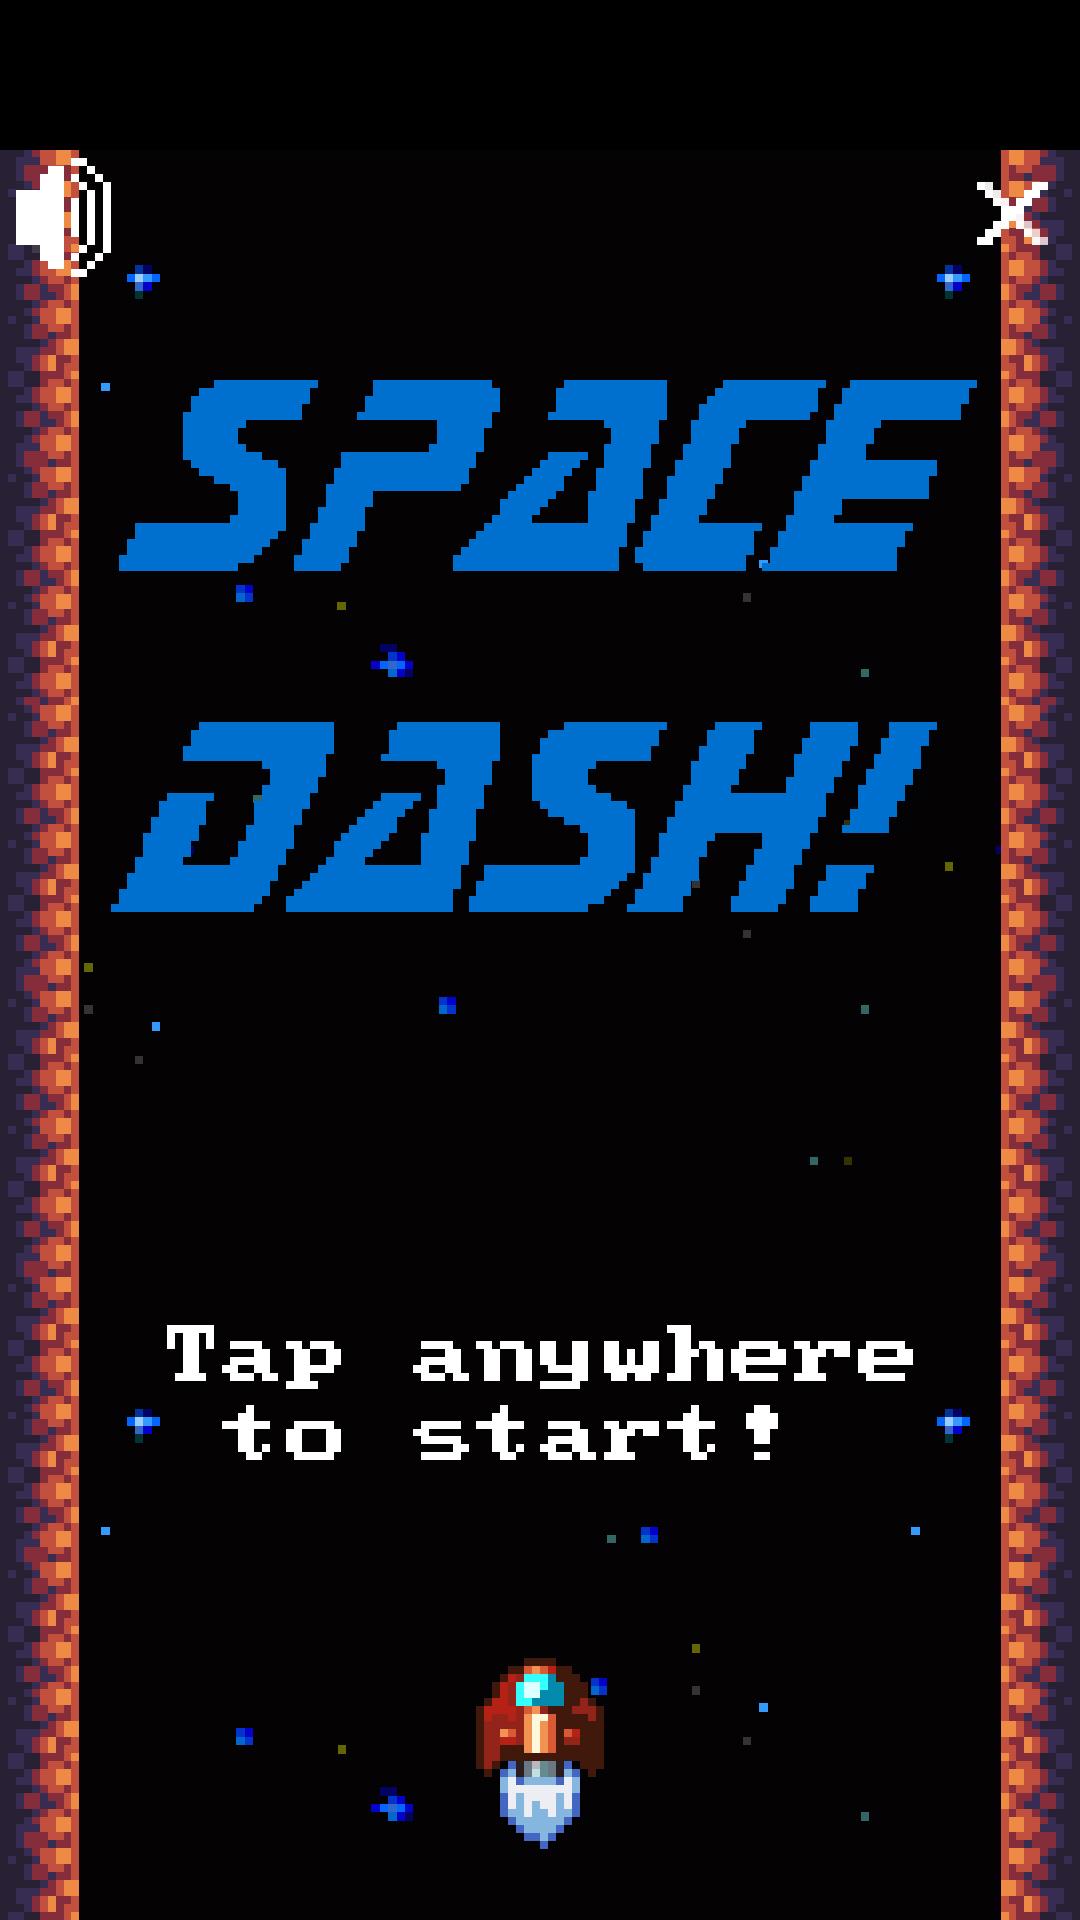 Space dash